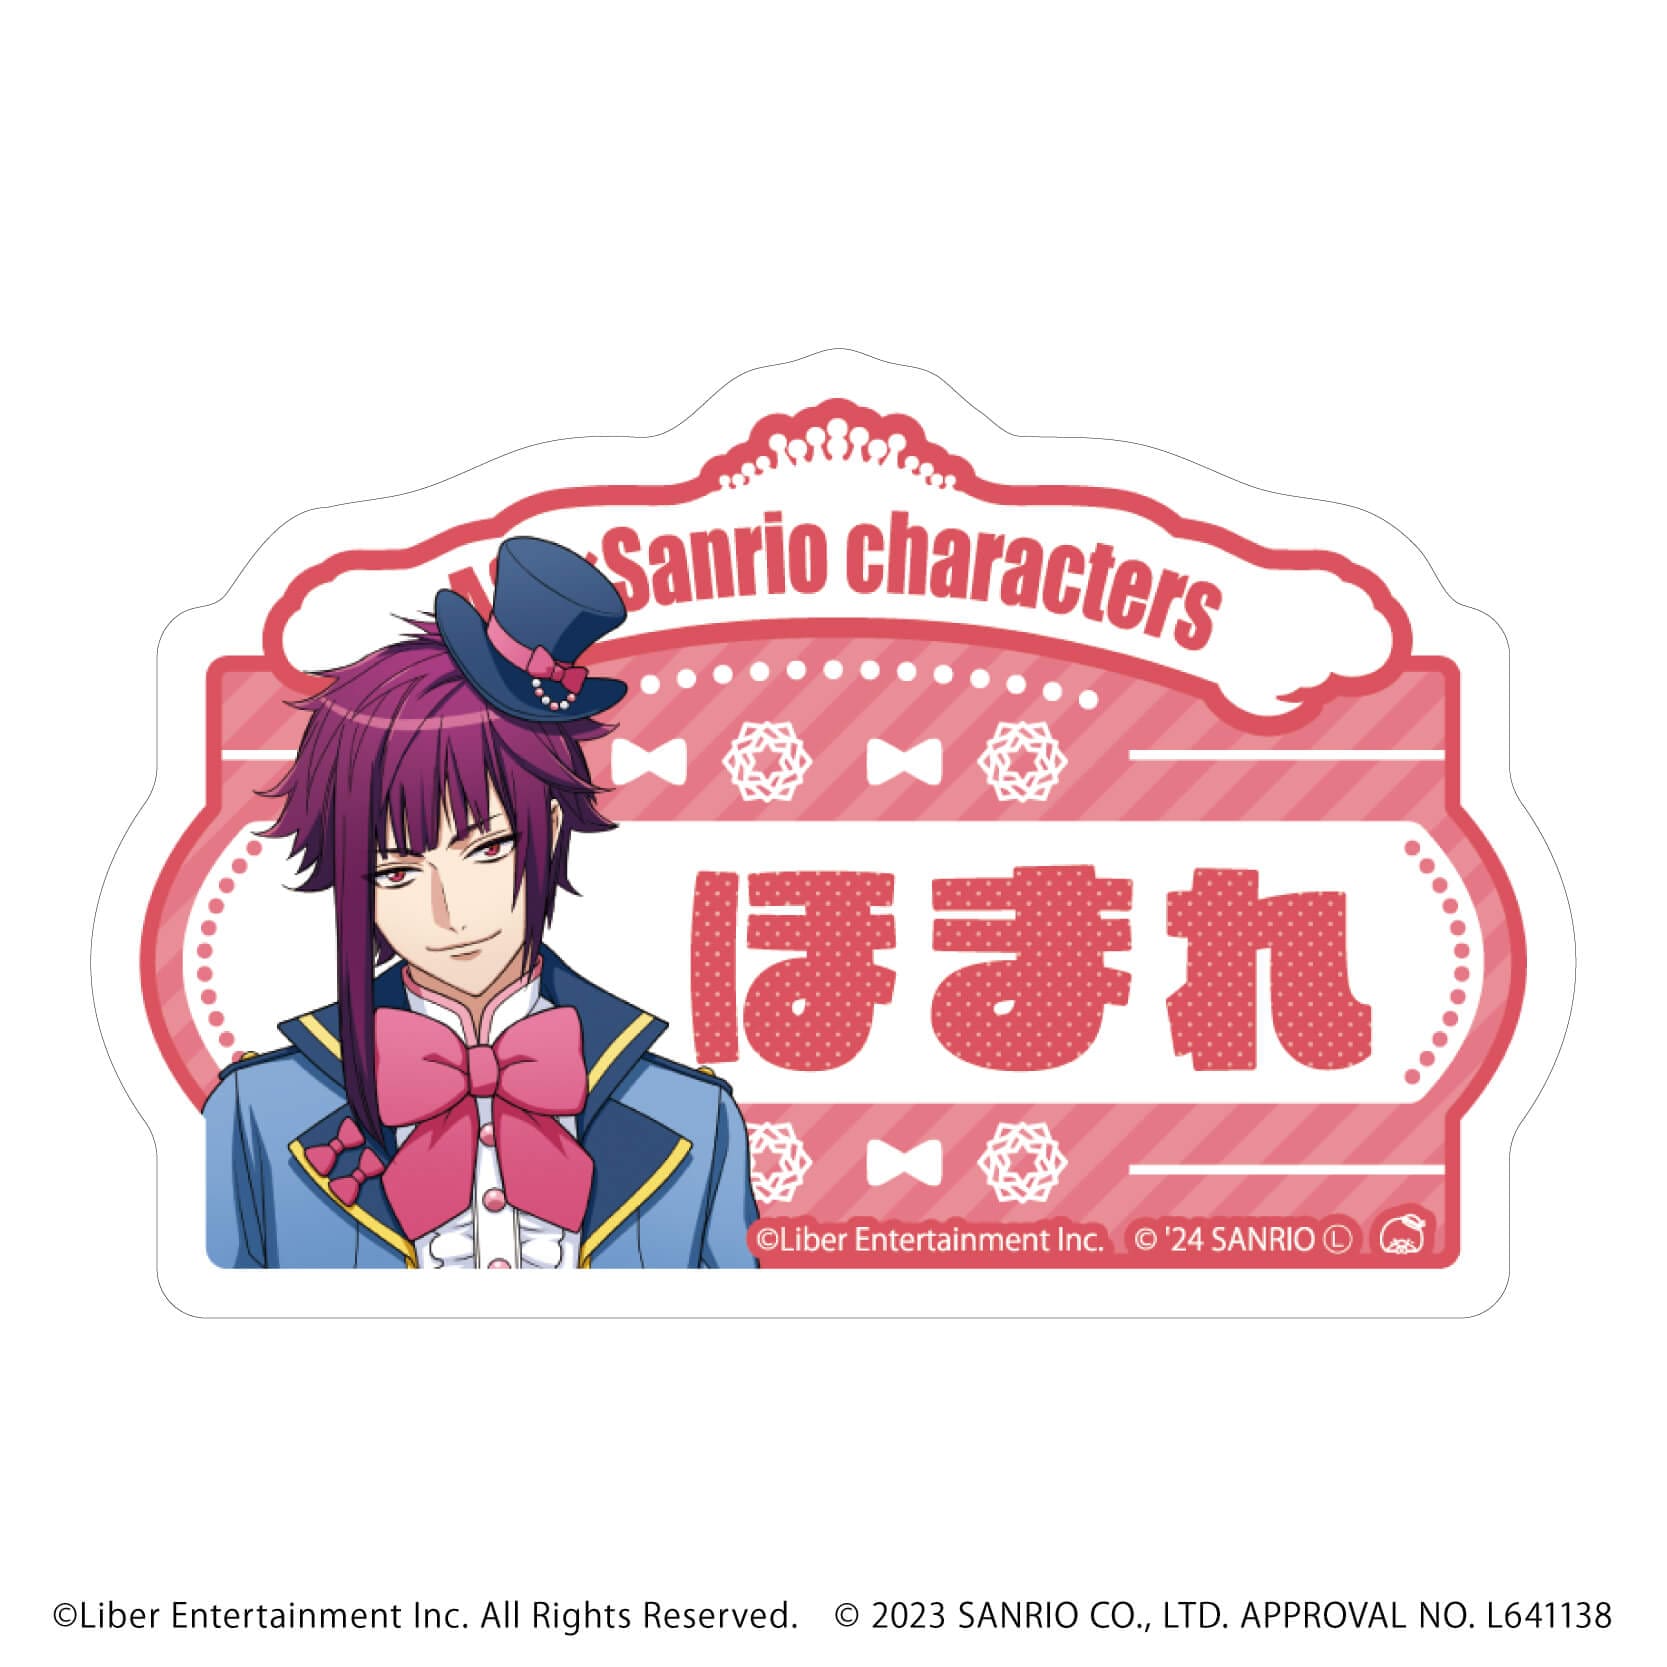 おなまえプレートバッジ「A3!×Sanrio characters」04/A＆W ブラインド(12種)(公式イラスト)